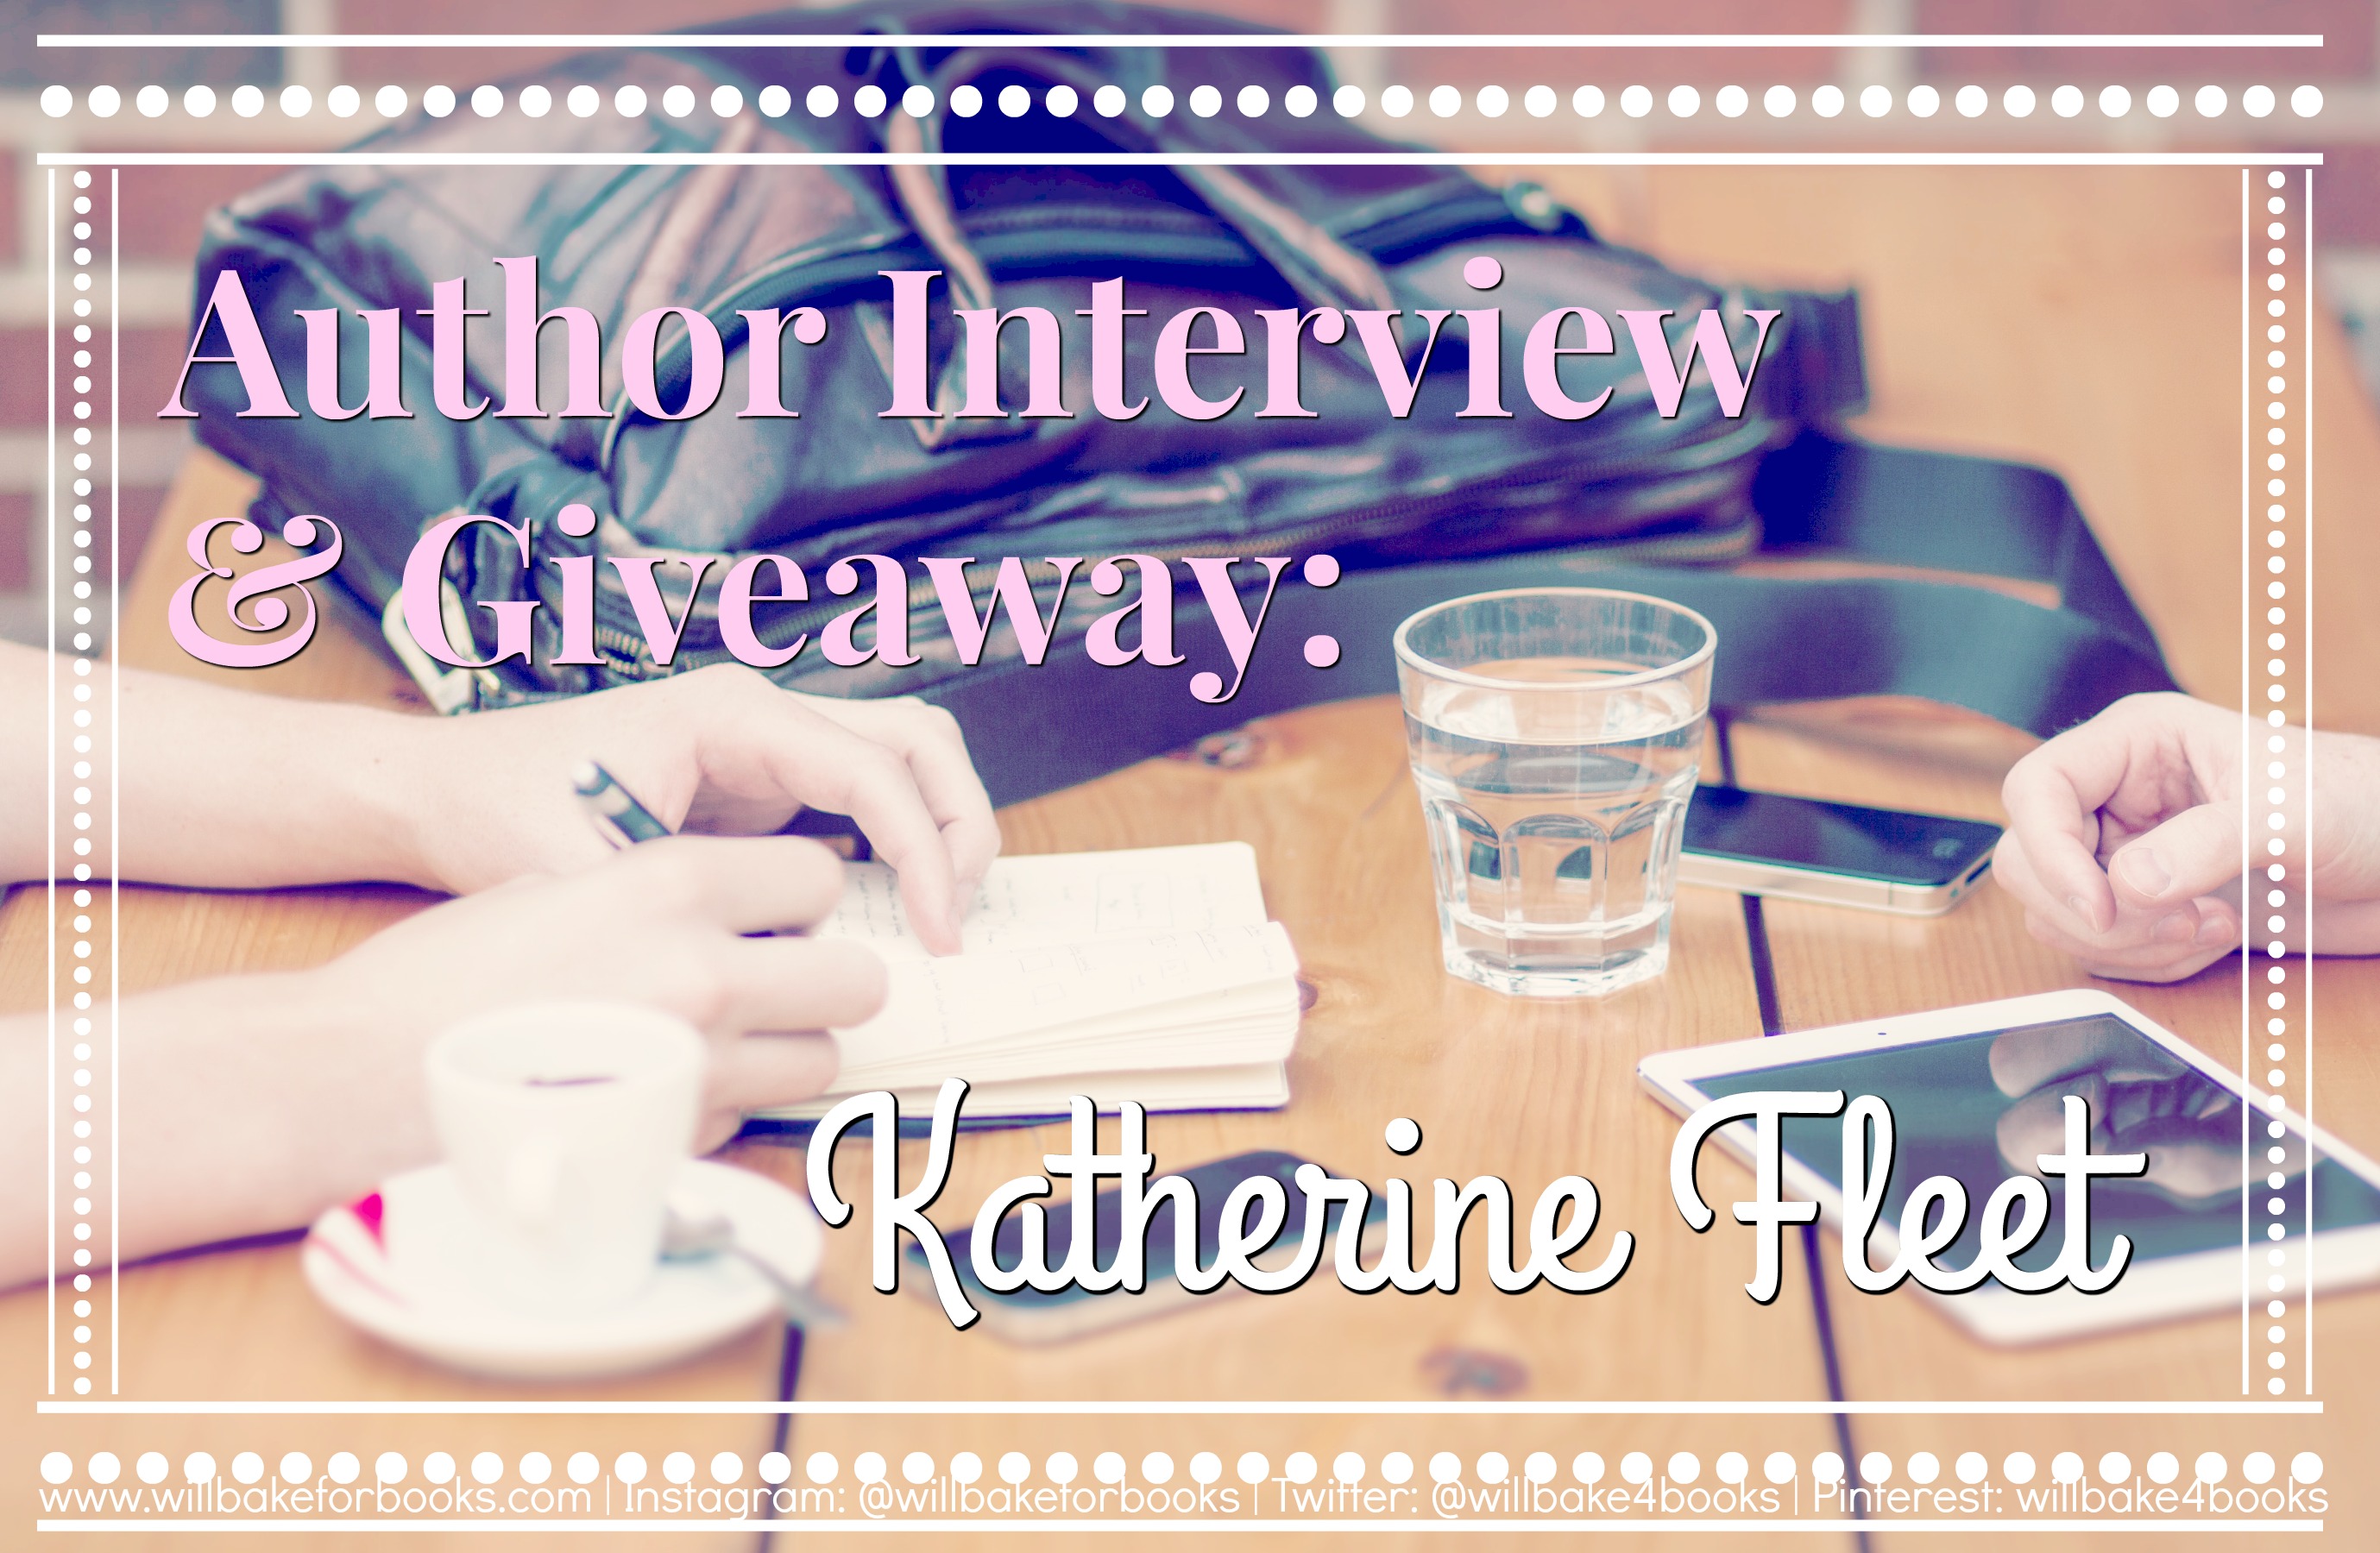 Author Interview & Giveaway: Katherine Fleet